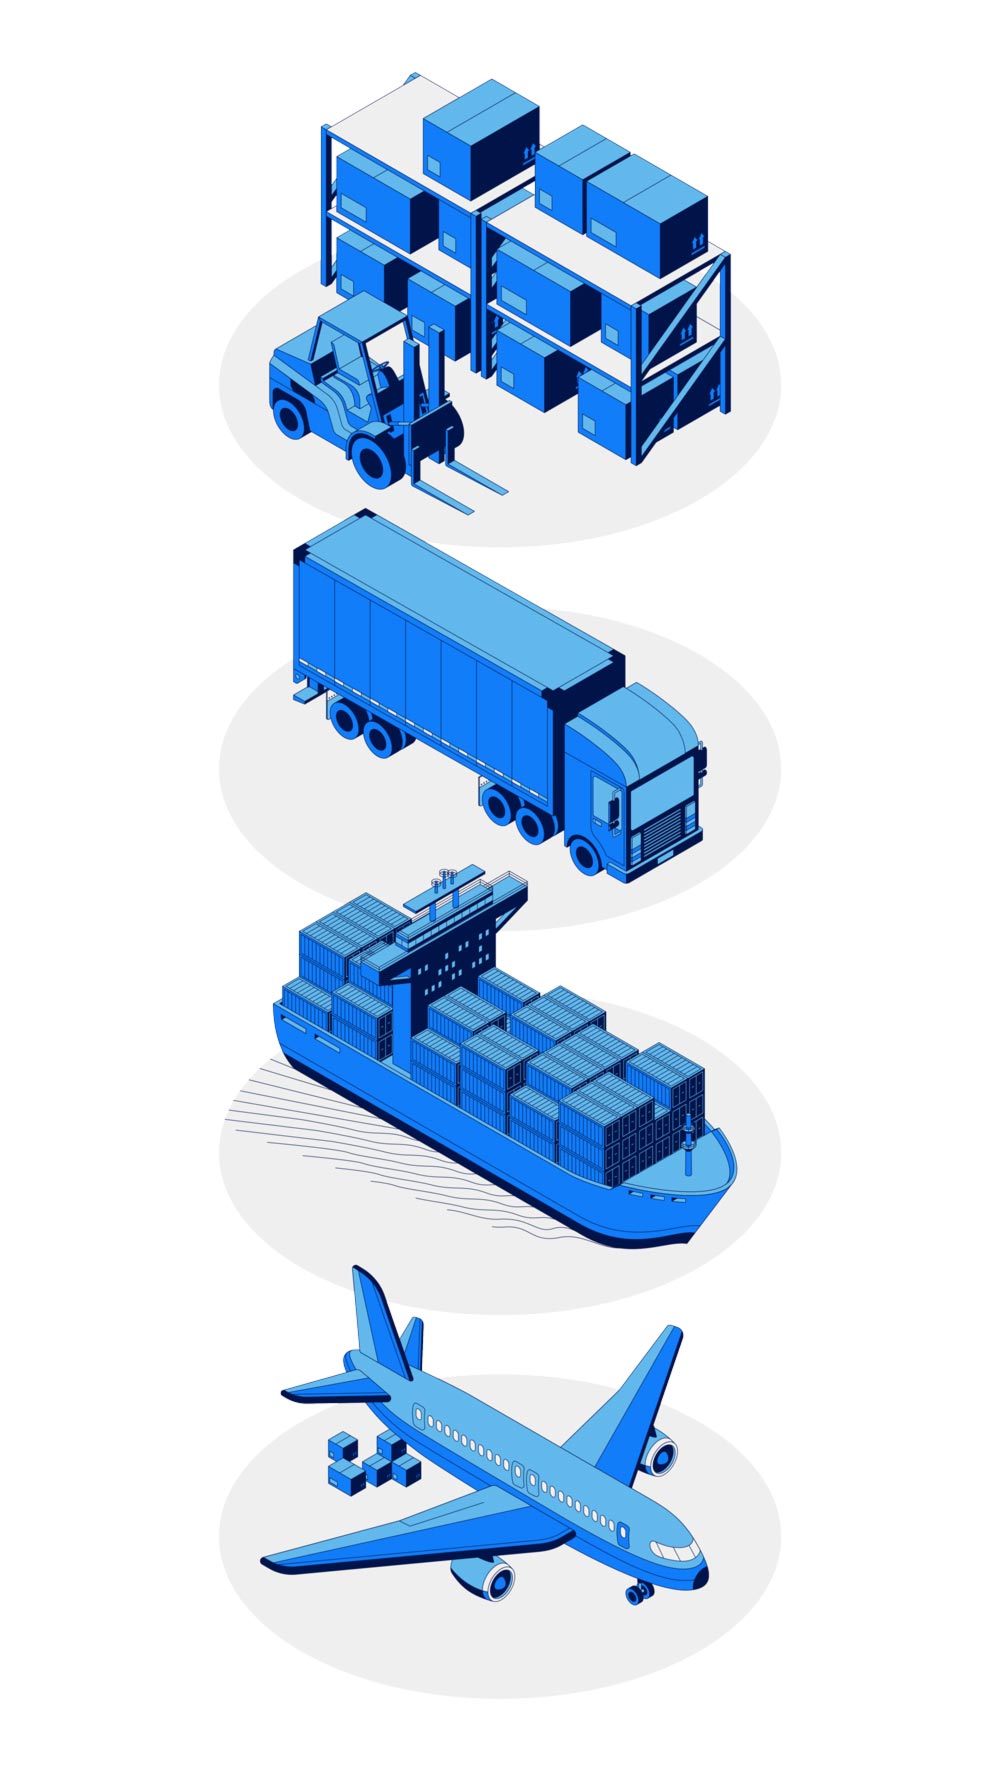 Categories-Logistics Services